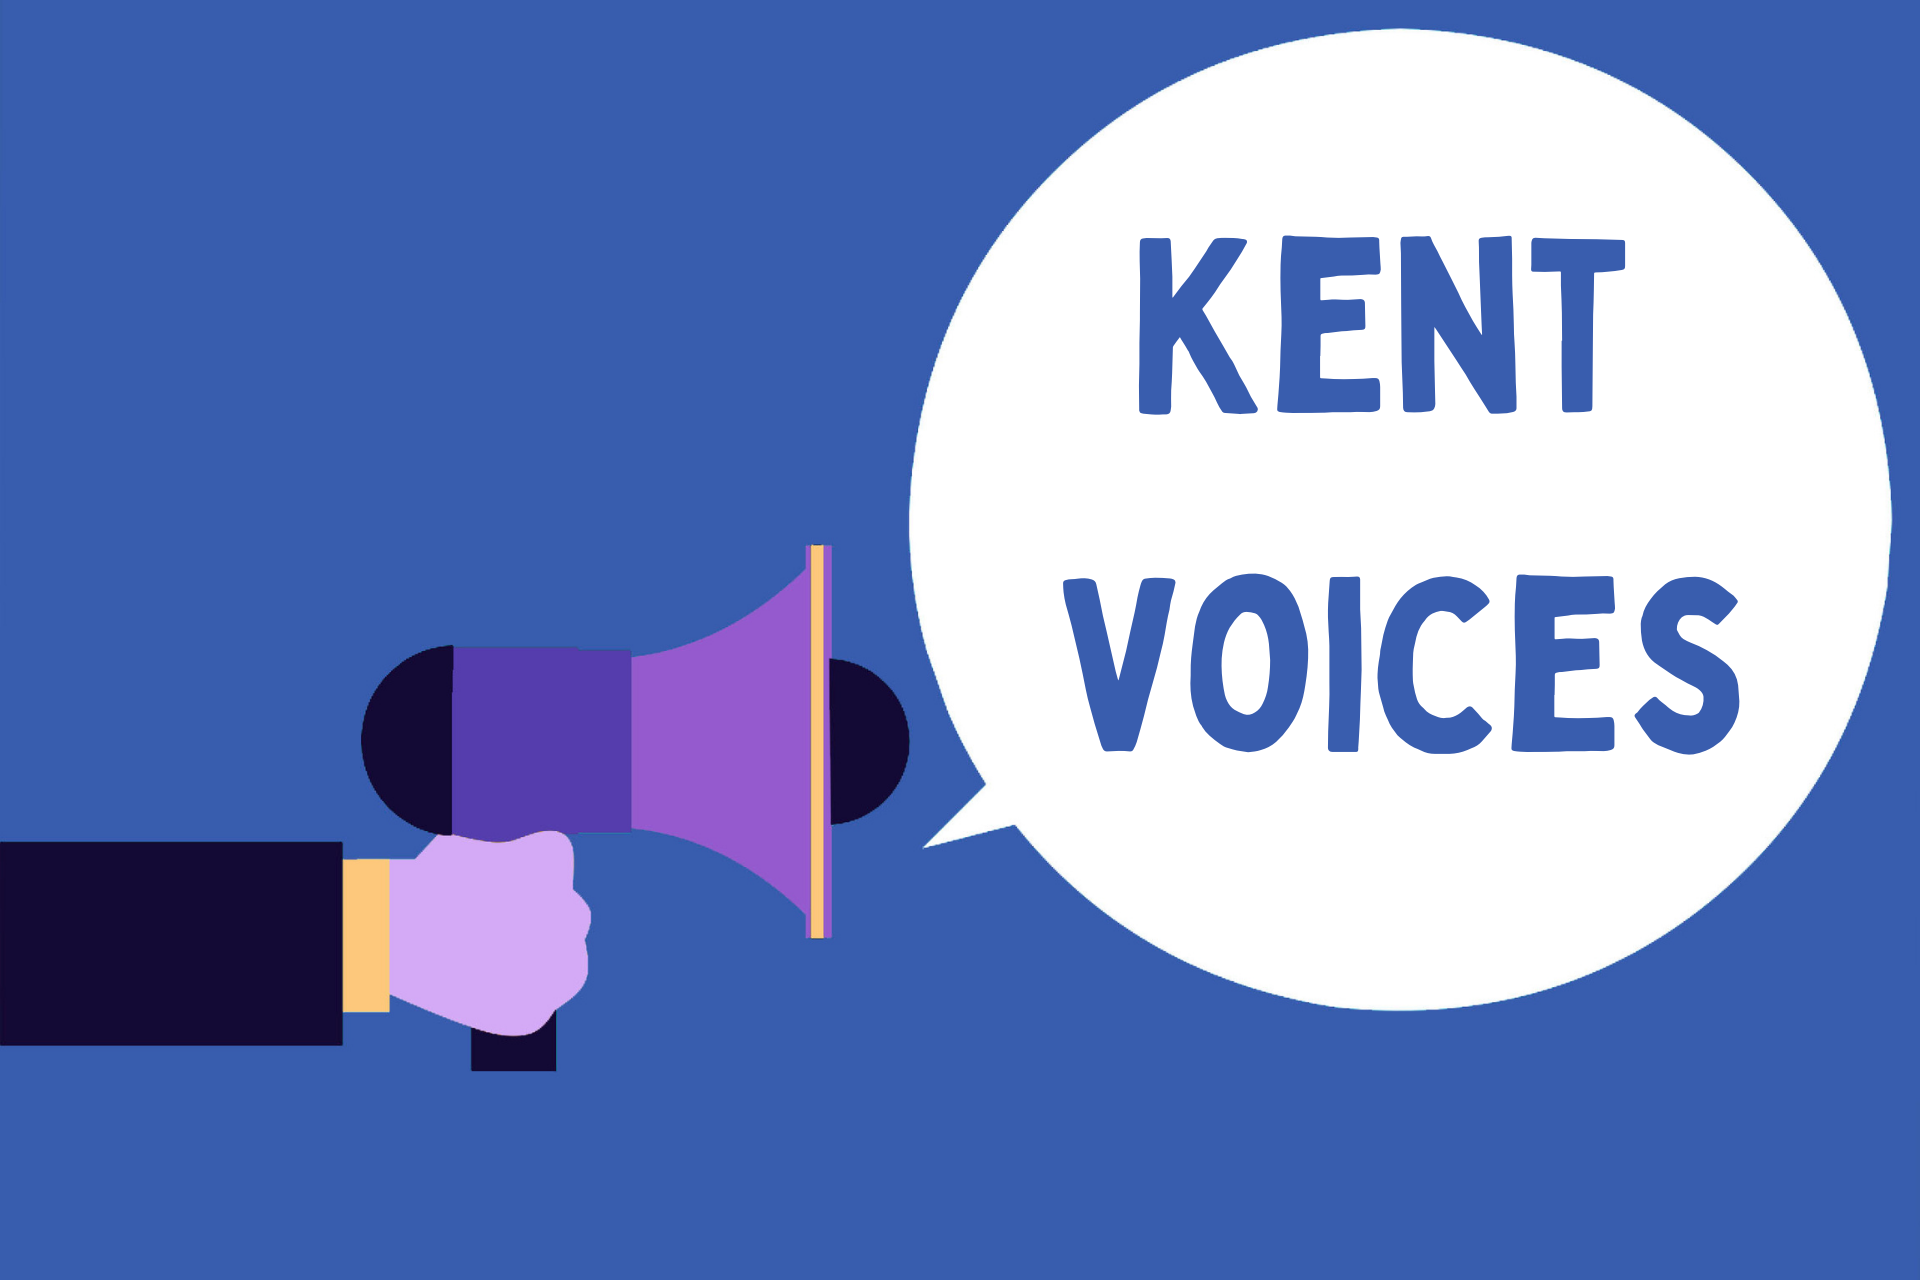 Kent voices podcast